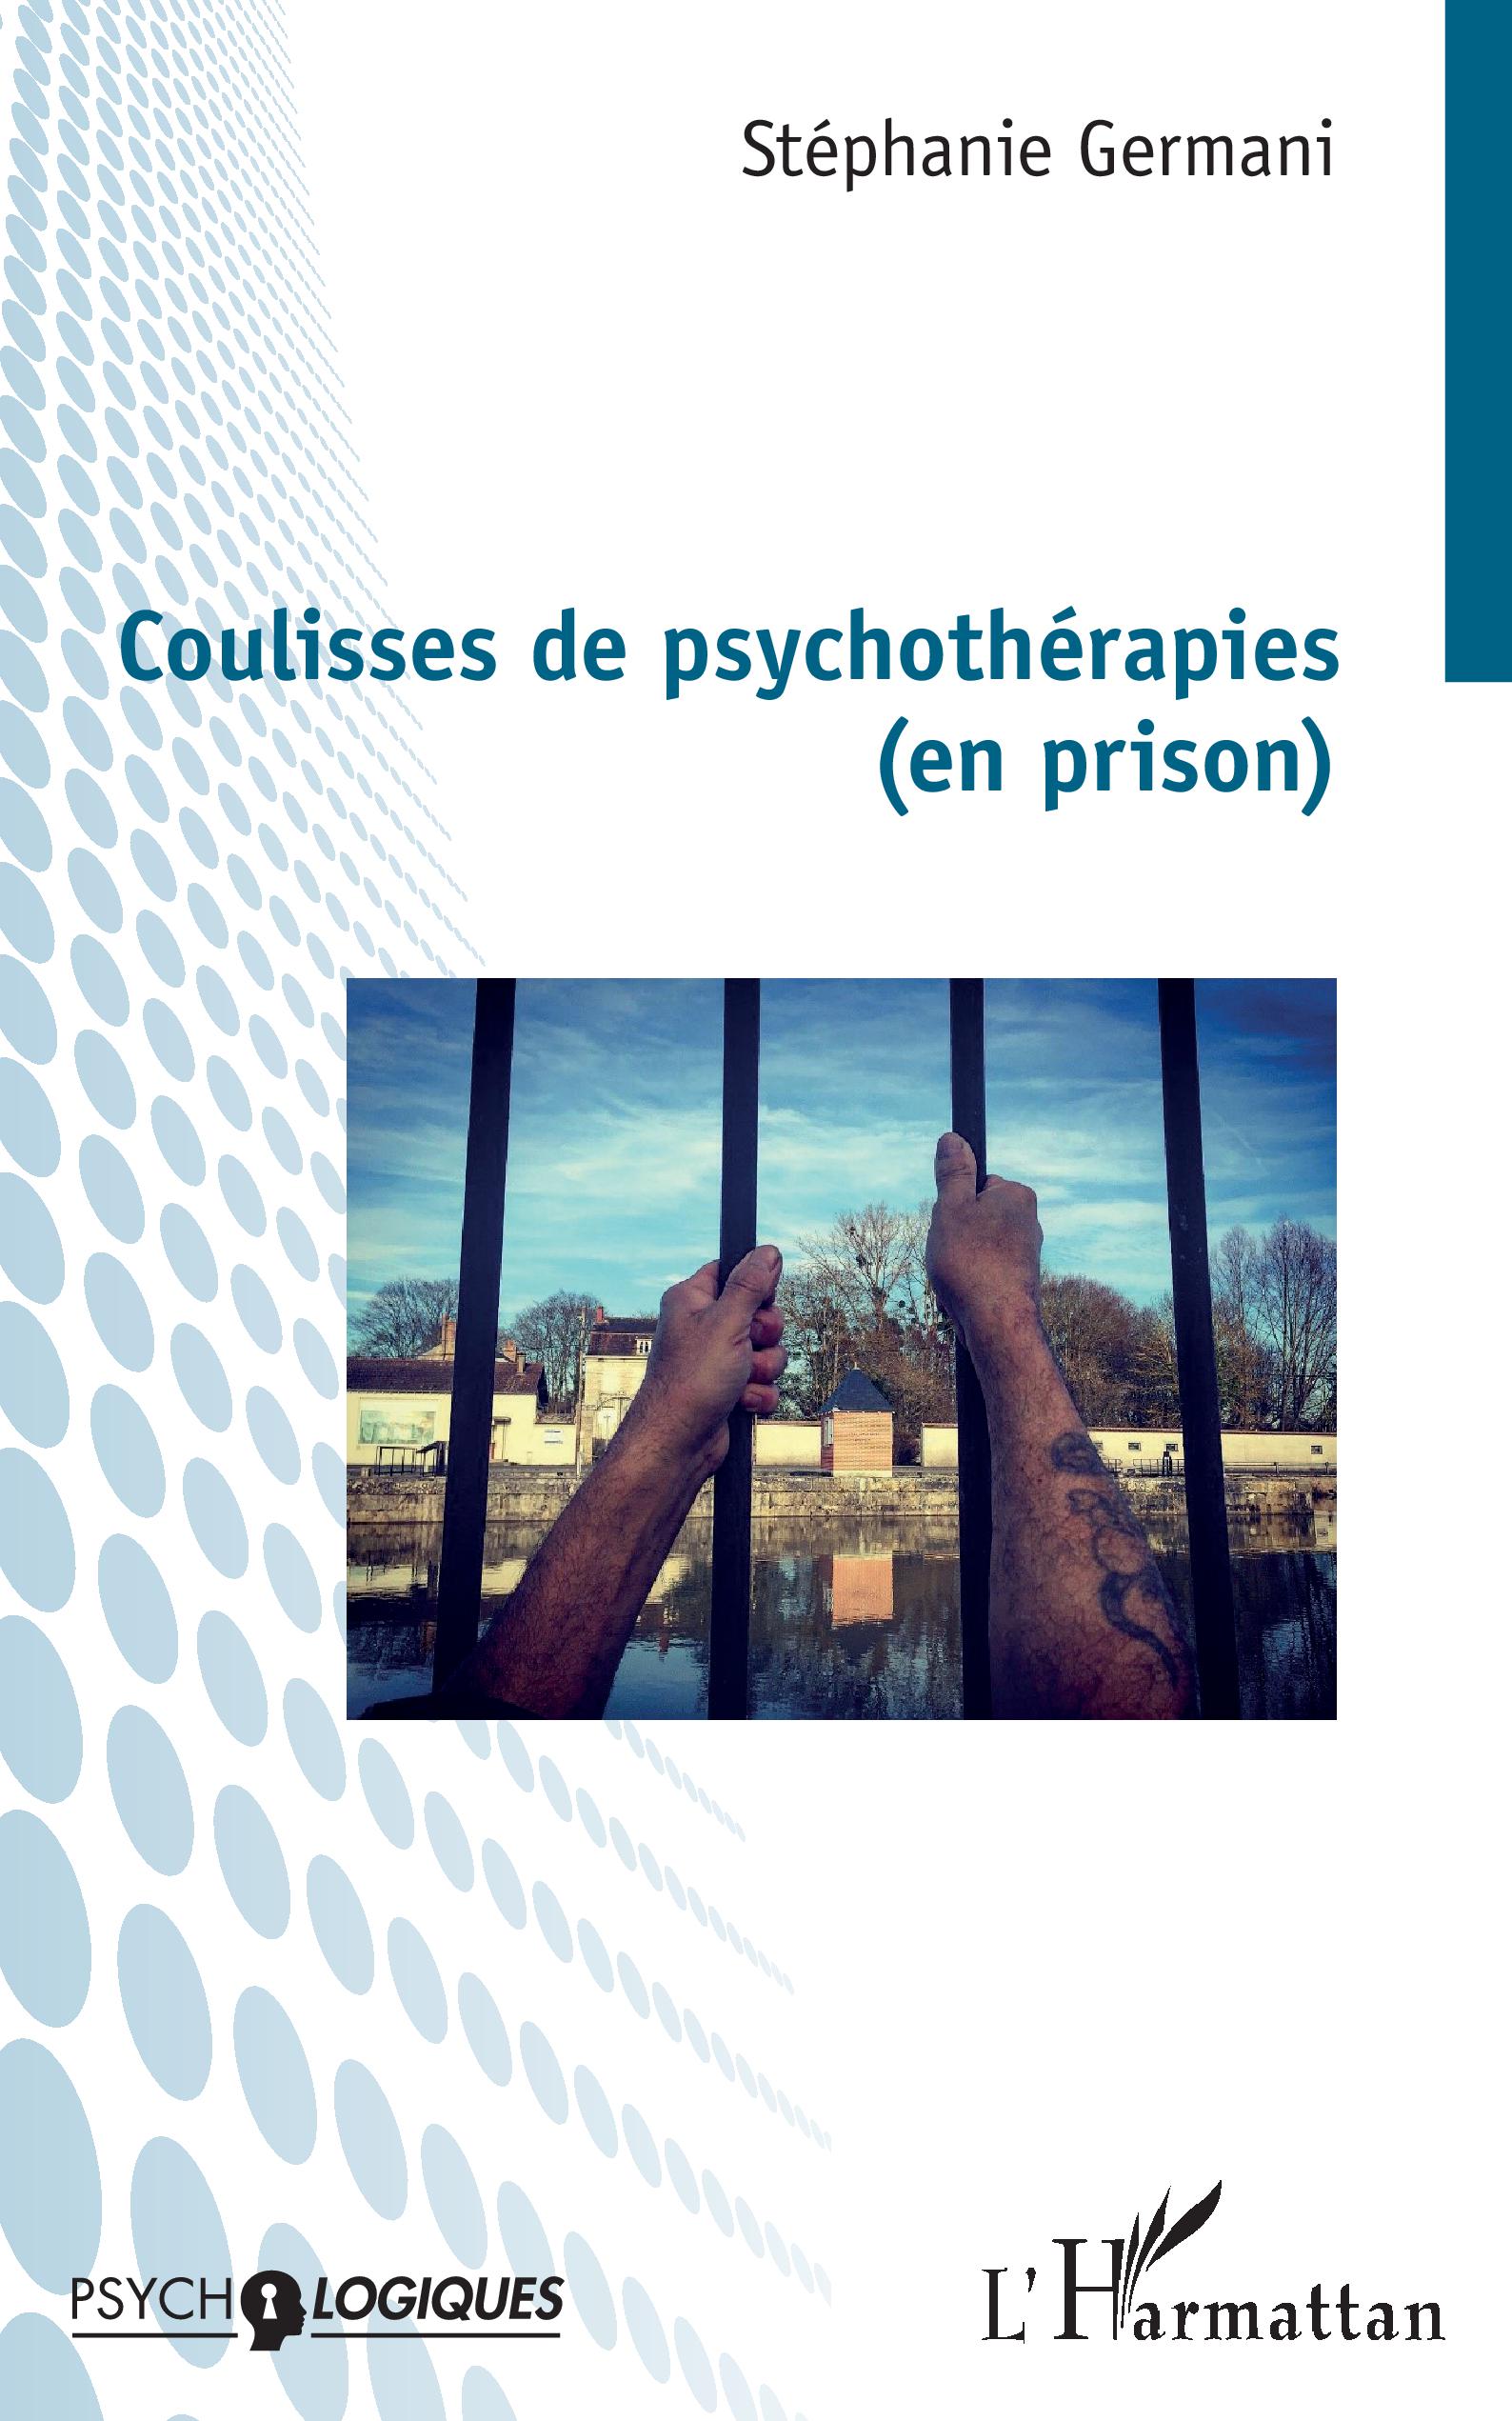 Image Coulisses de psychothérapies (en prison)